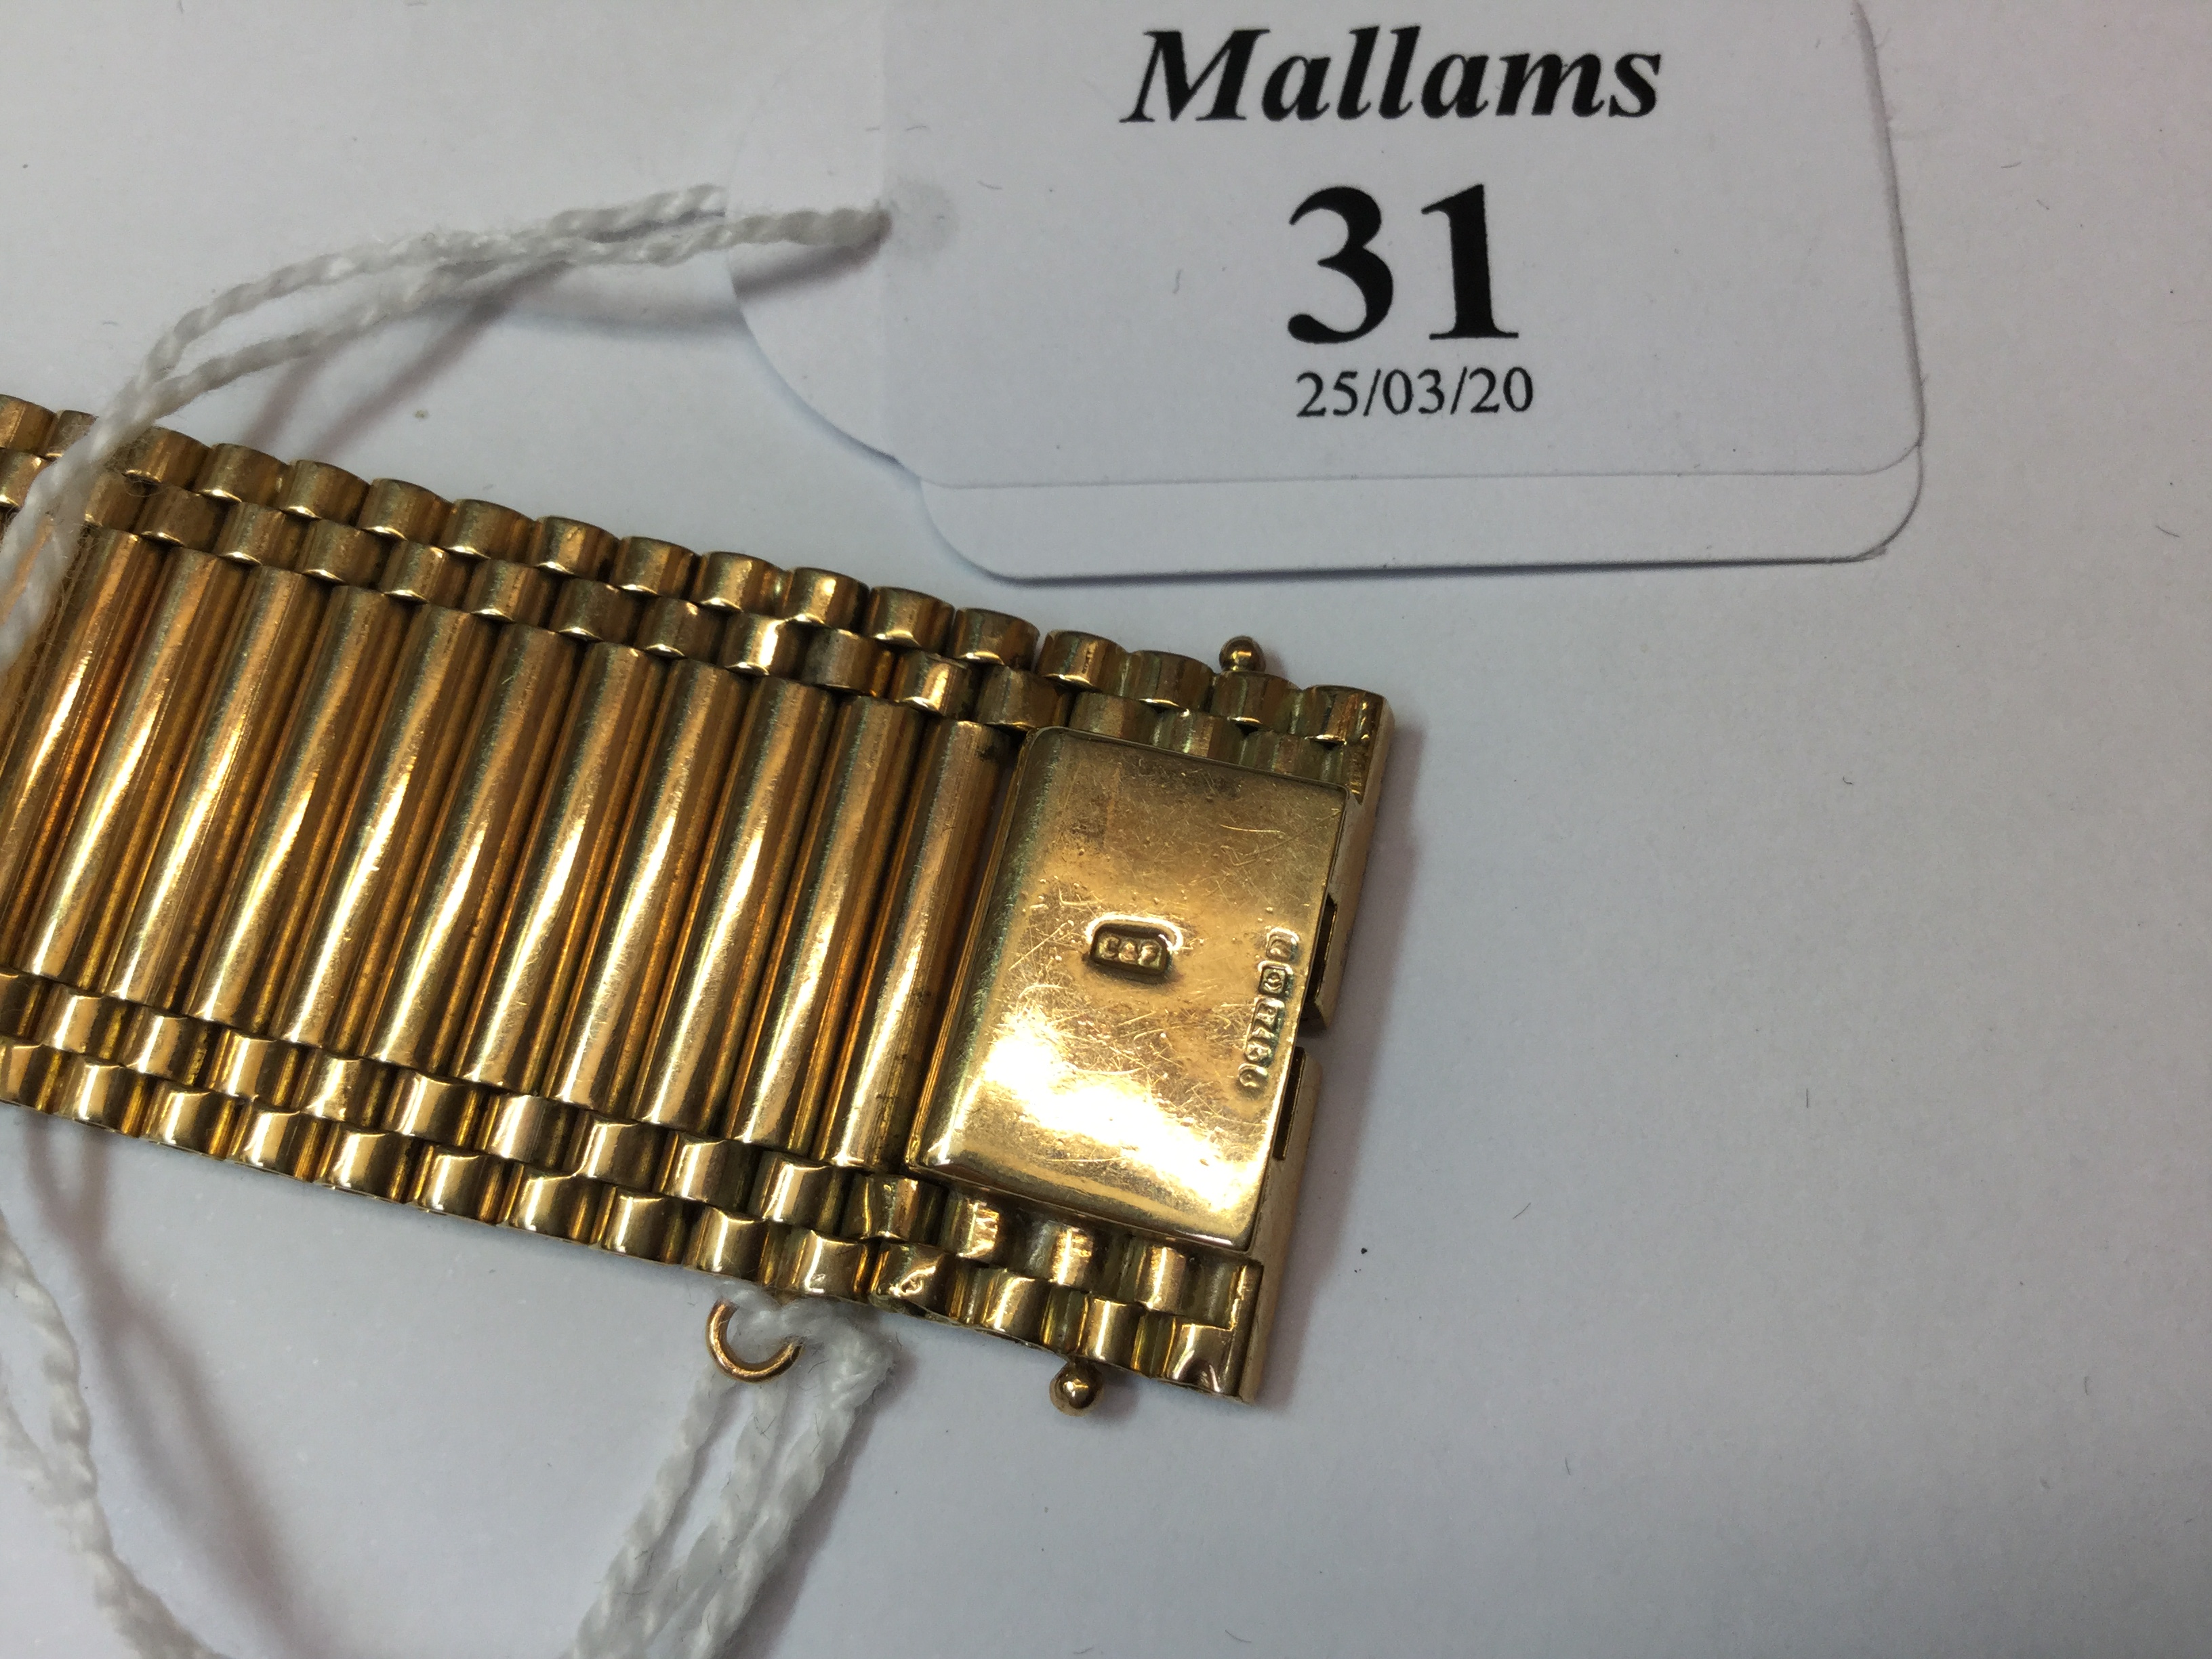 A 9CT GOLD FANCY-LINK BRACELET, of brick-link design, with Birmingham hallmark, length 18.5cm - Image 4 of 5